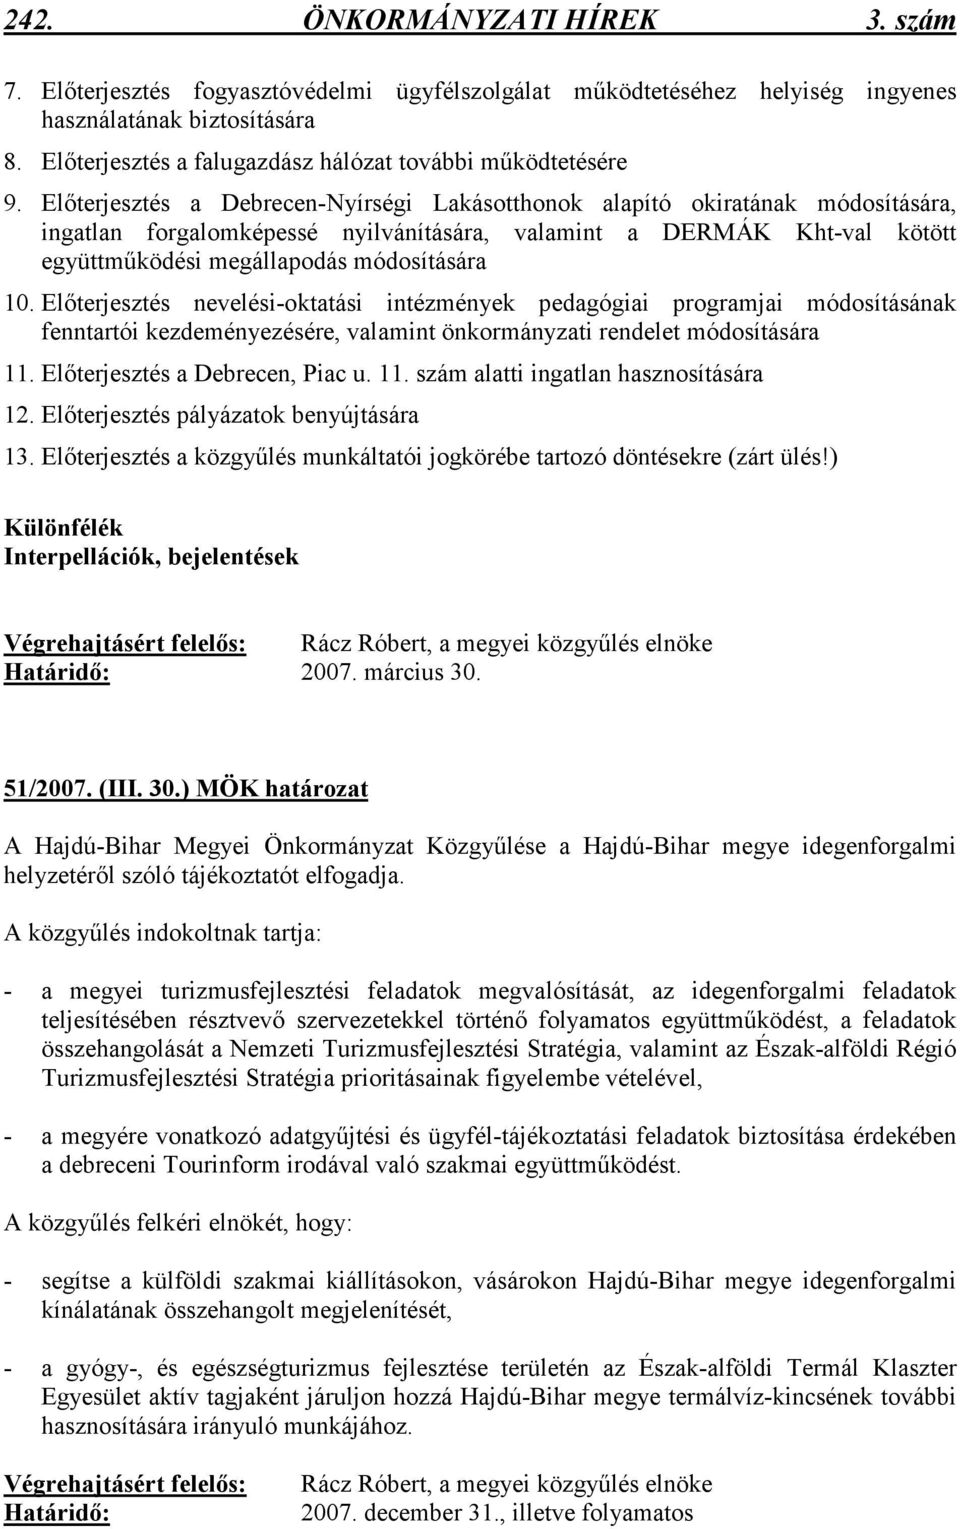 Elıterjesztés a Debrecen-Nyírségi Lakásotthonok alapító okiratának módosítására, ingatlan forgalomképessé nyilvánítására, valamint a DERMÁK Kht-val kötött együttmőködési megállapodás módosítására 10.